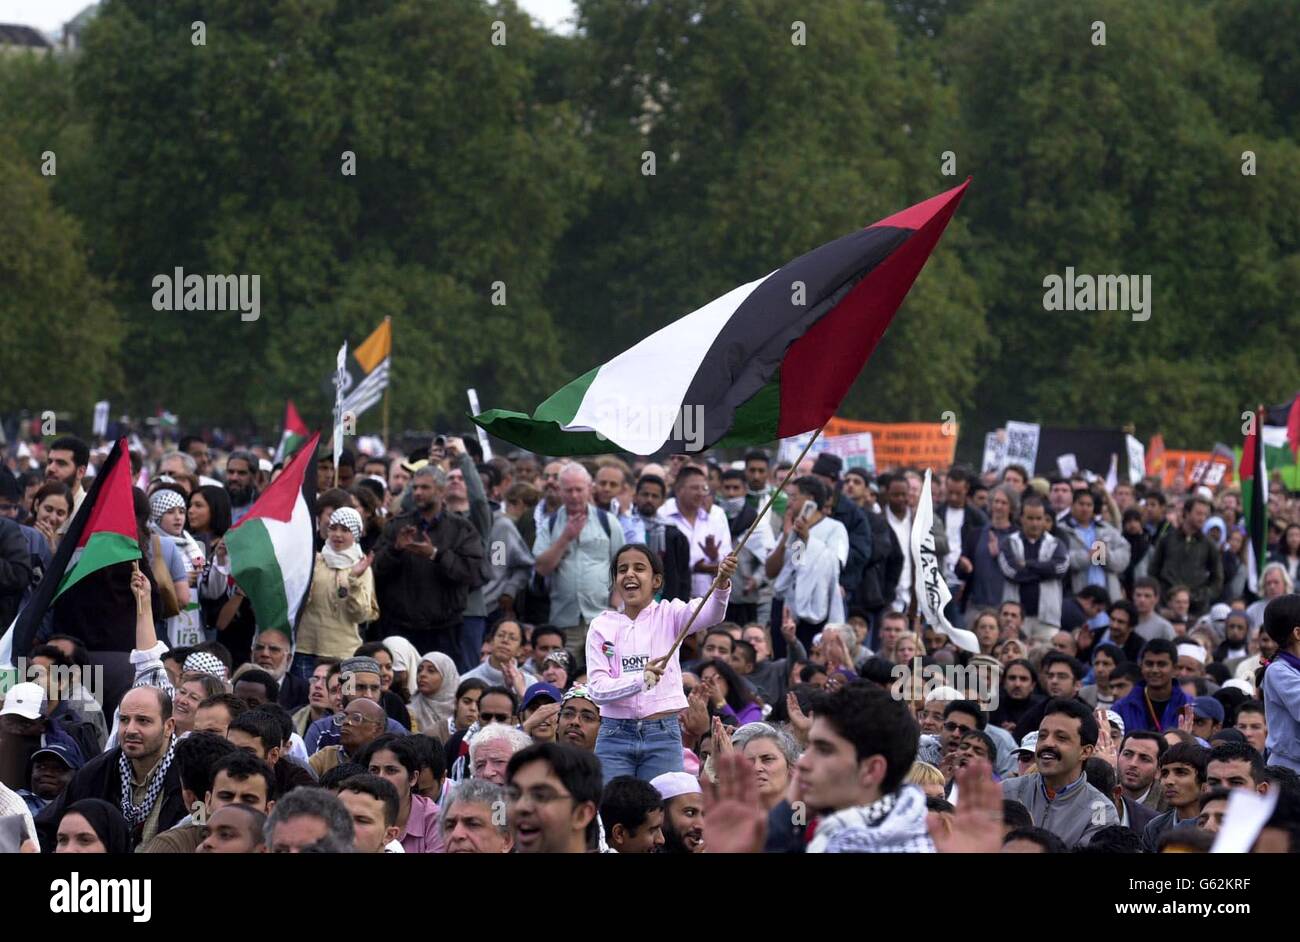 Die Menge bei der Peace Rally im Londoner Hyde Park. Schätzungsweise 150,000 Menschen kamen heute in das Zentrum Londons, um gegen den Krieg gegen den Irak zu protestieren, was die Organisatoren behaupteten, die größte Demonstration dieser Art in Großbritannien zu sein. * Sie bestanden darauf, dass mehr als 350,000 Demonstranten an der Kundgebung teilnahmen, aber die Polizei gab die offizielle Zahl auf etwa 150,000 an. Stockfoto